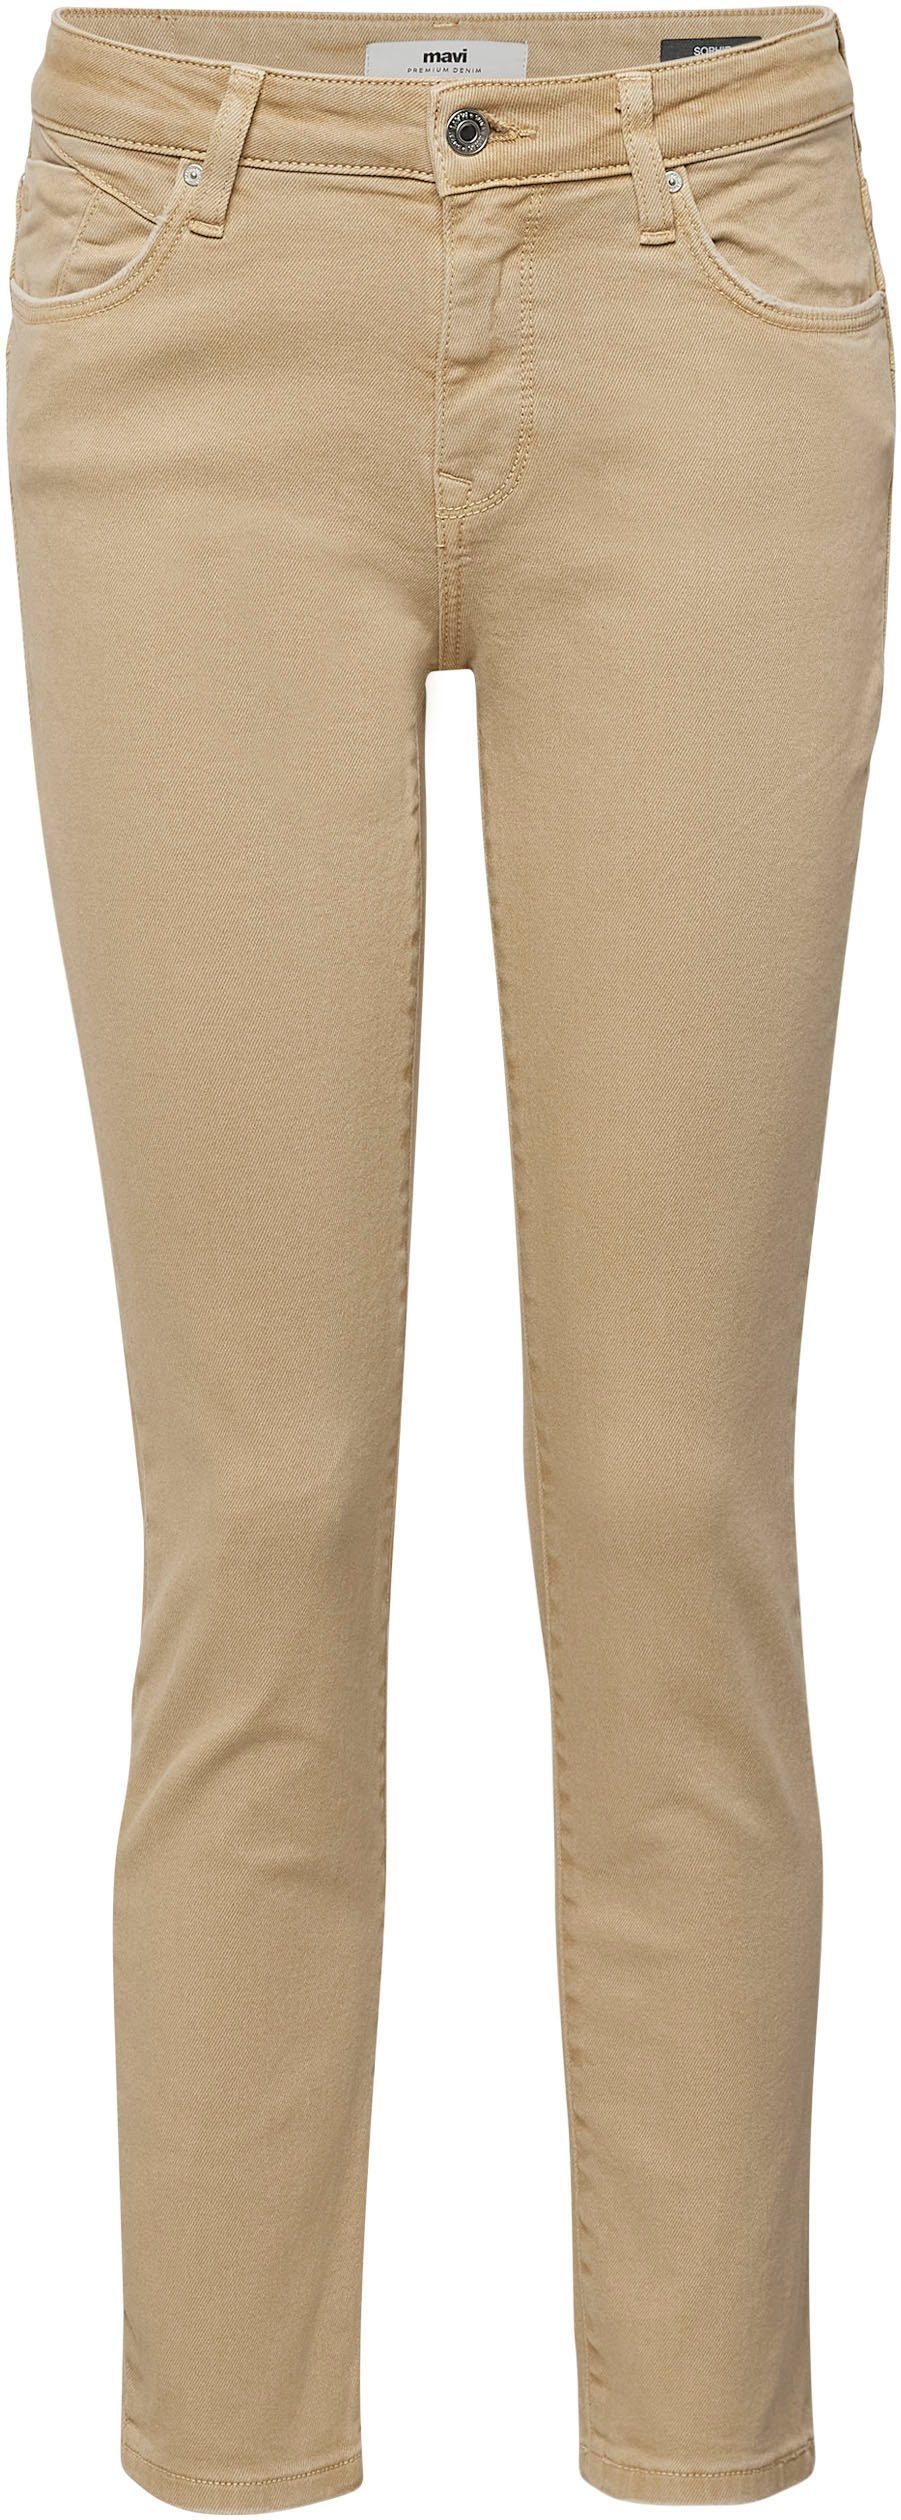 Verarbeitung dank Stretchdenim hochwertiger trageangenehmer camel Slim-fit-Jeans (beige) Mavi